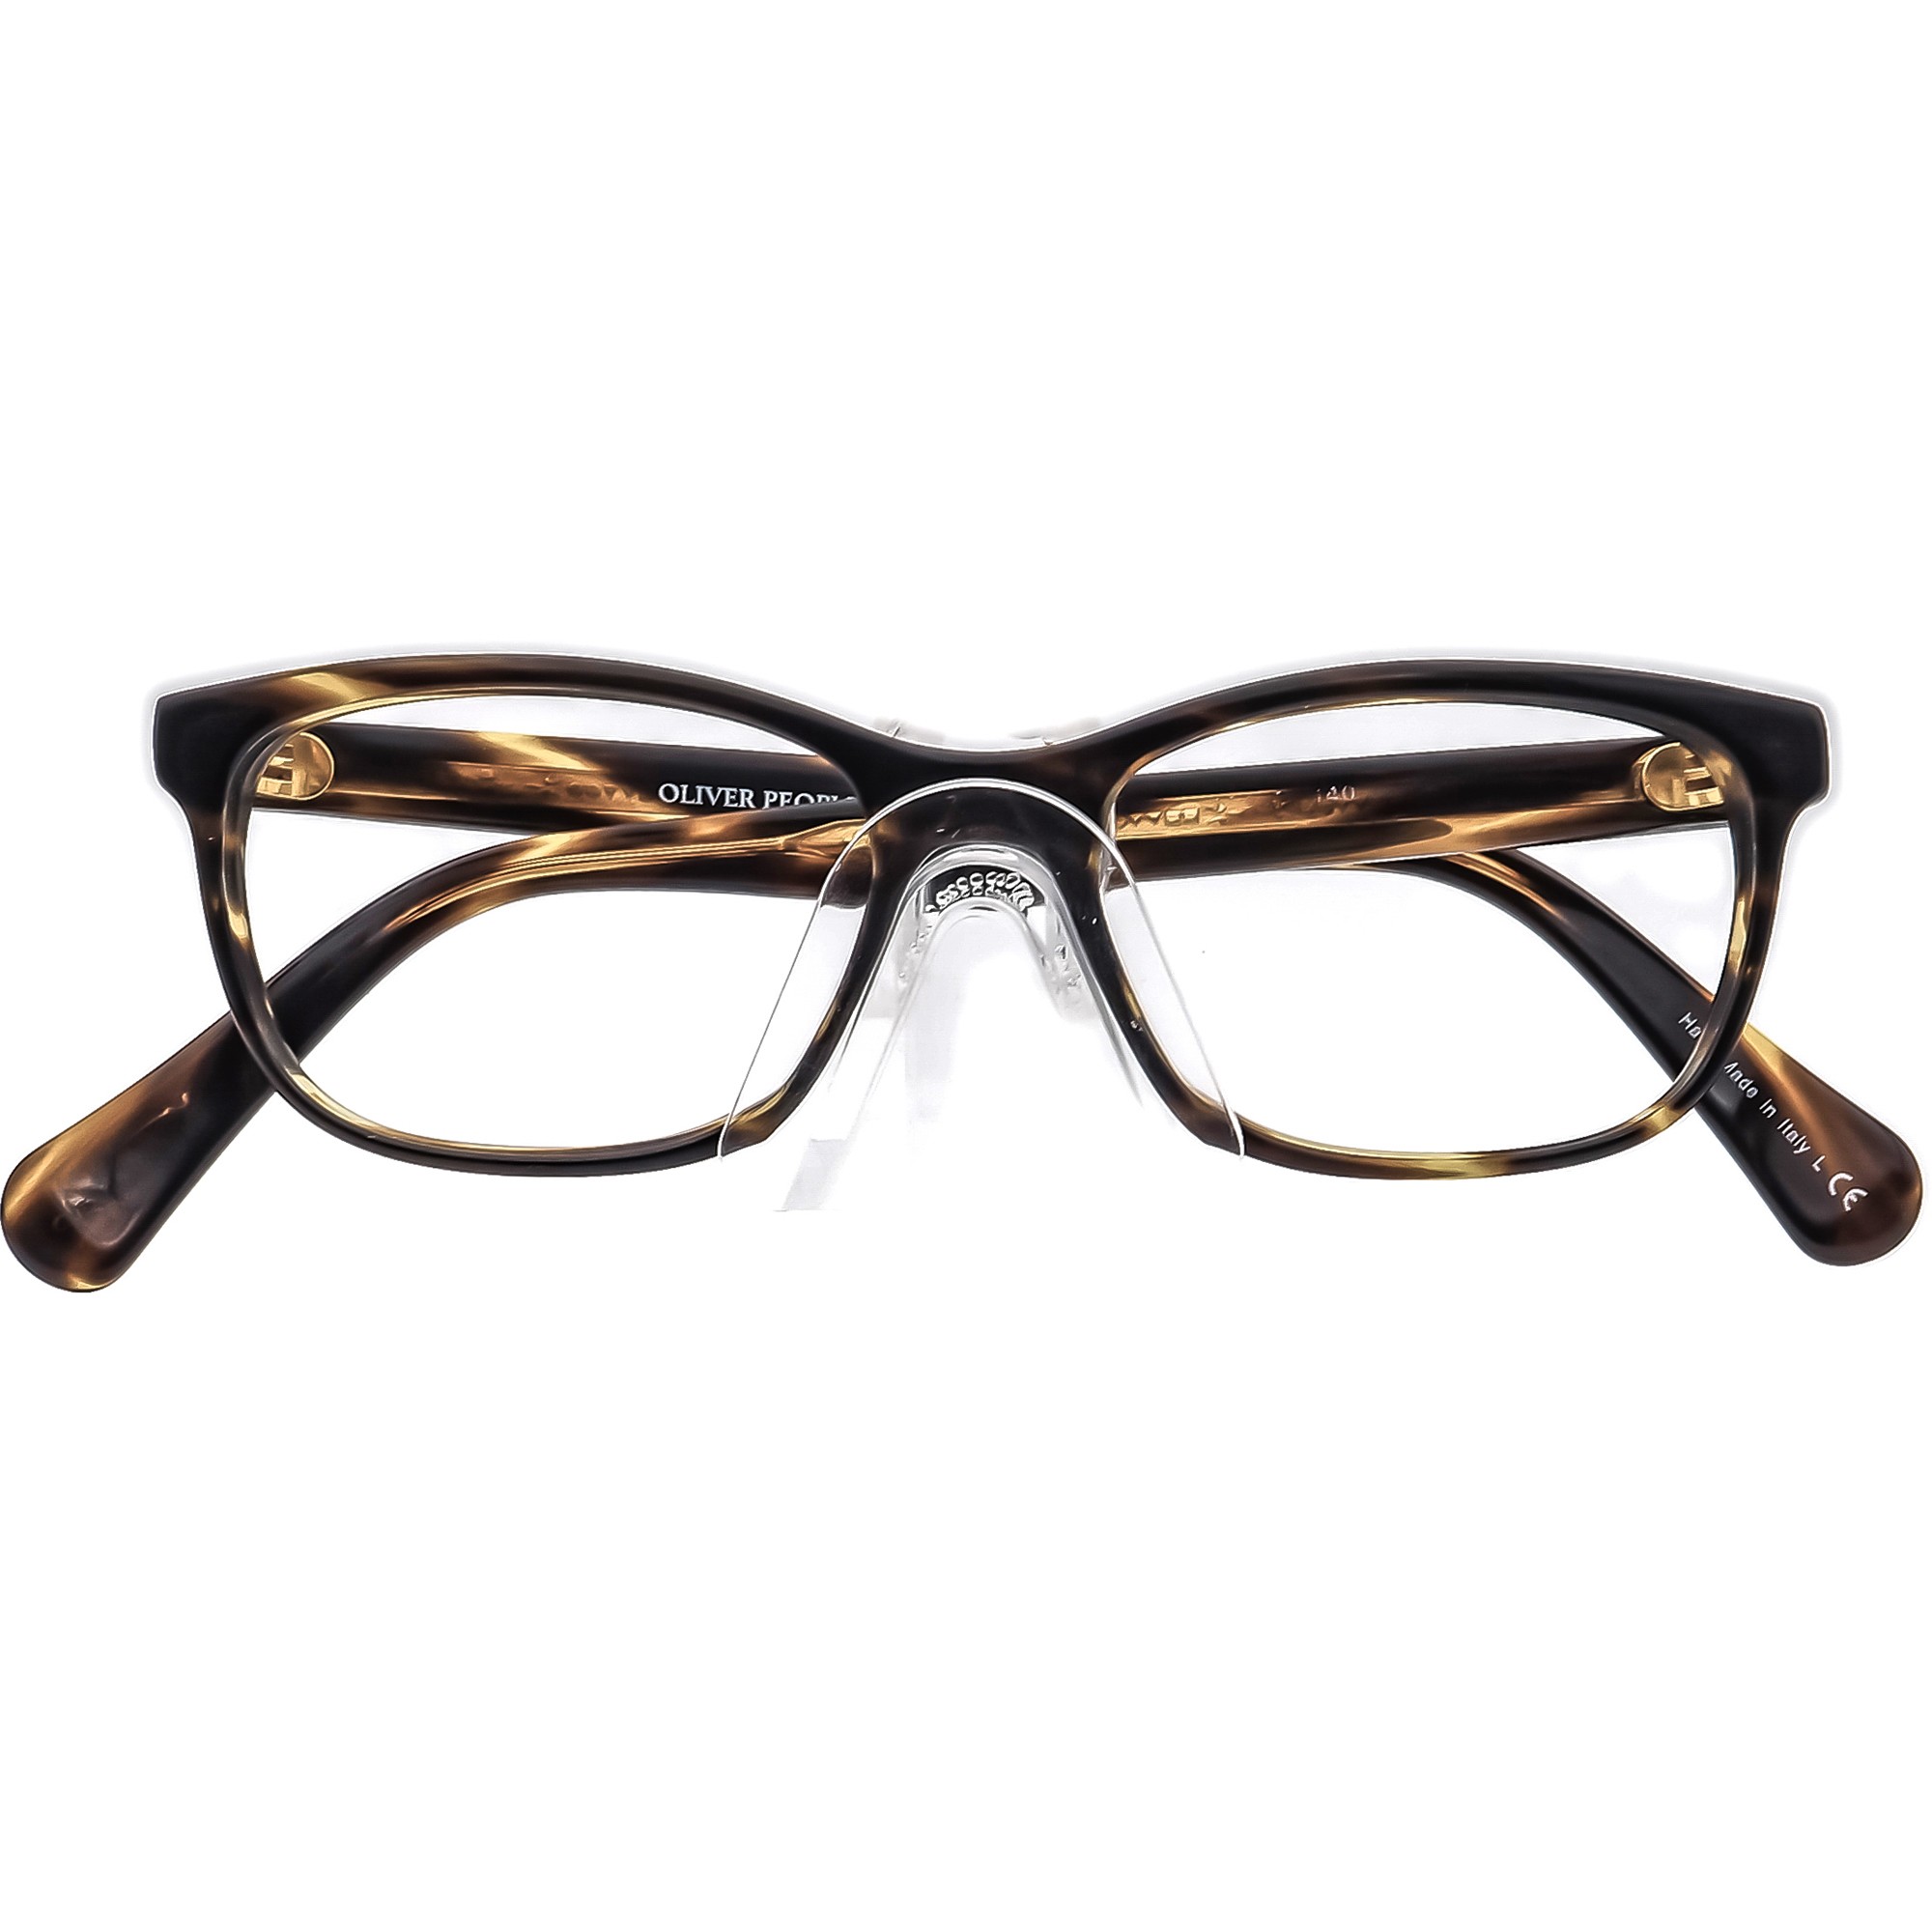 Oliver Peoples Eyeglasses: Where Craftsmanship Meets Timeless Elegance